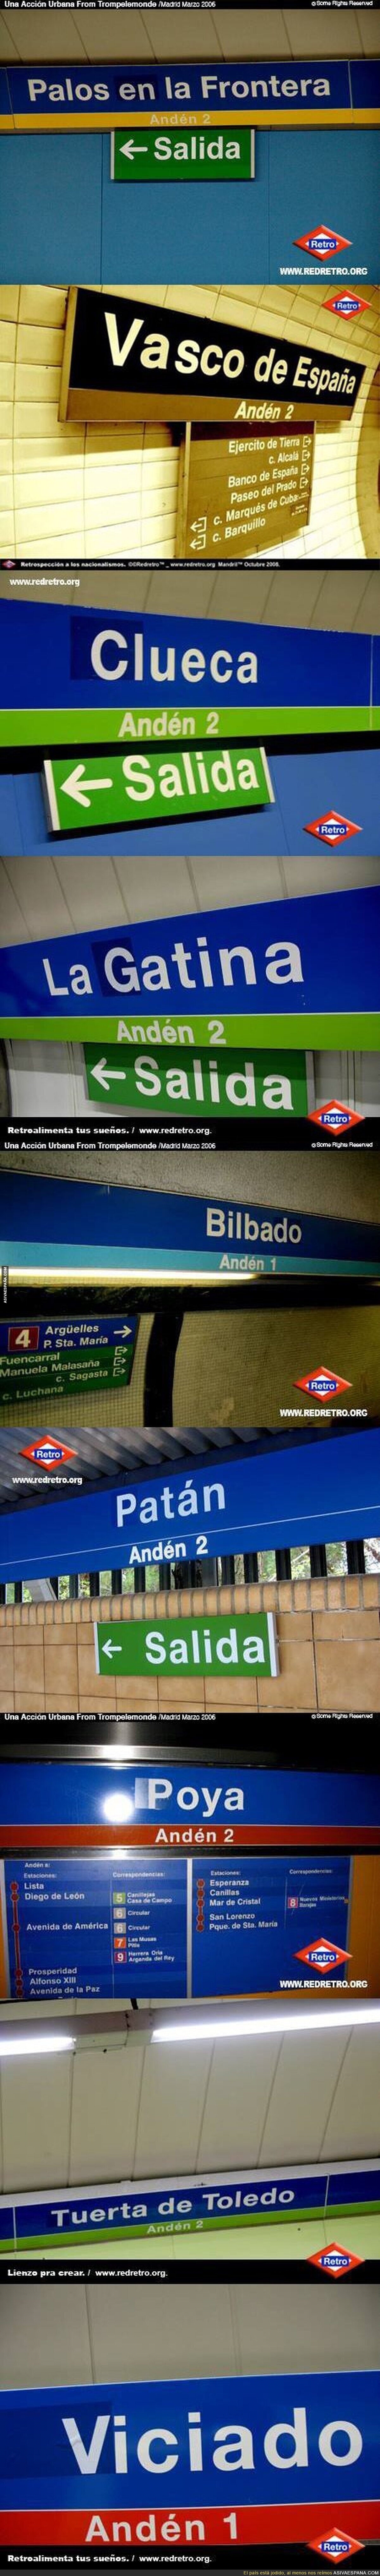 Paradas de metro en Madrid que han sido troleadas